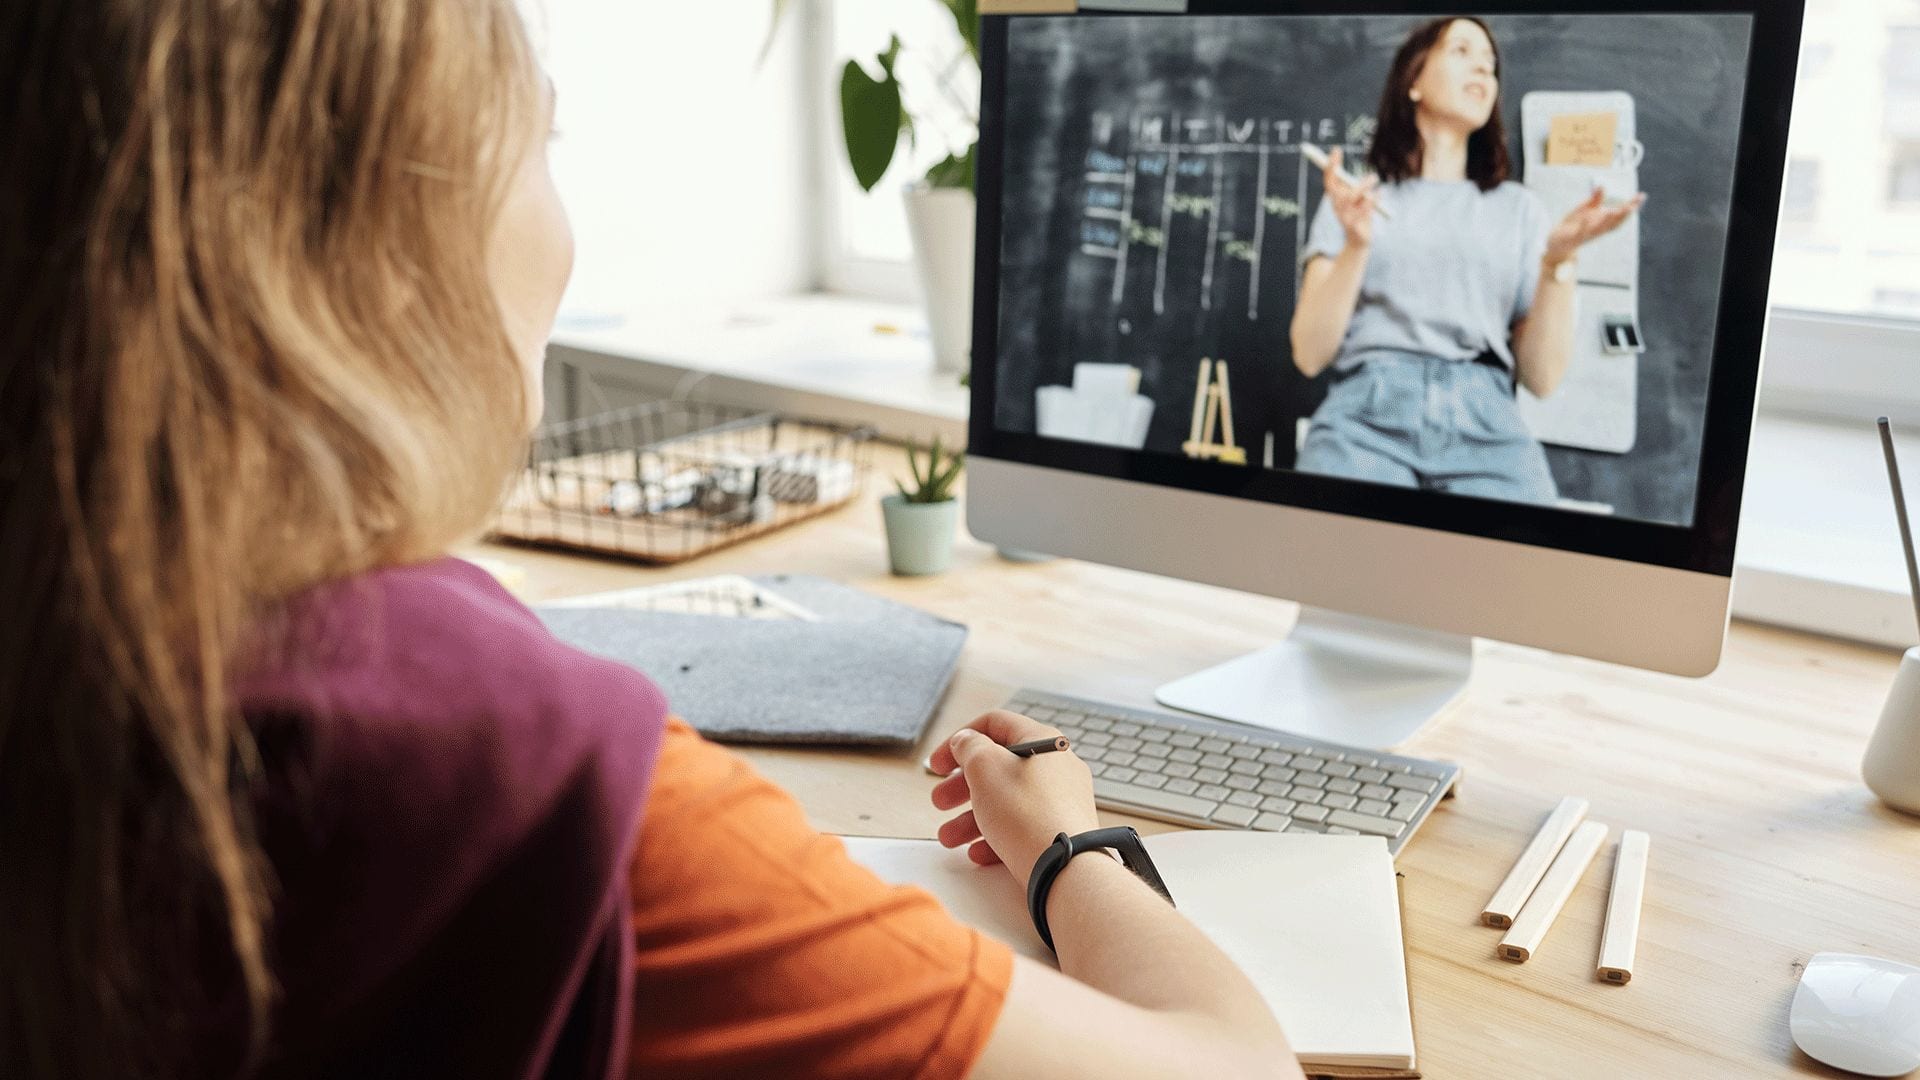 tjej sitter framför datorn och pluggar på distans genom att se på en digital lektion används som bild för att kontakta oss om man är intresserad av skolundersökningar